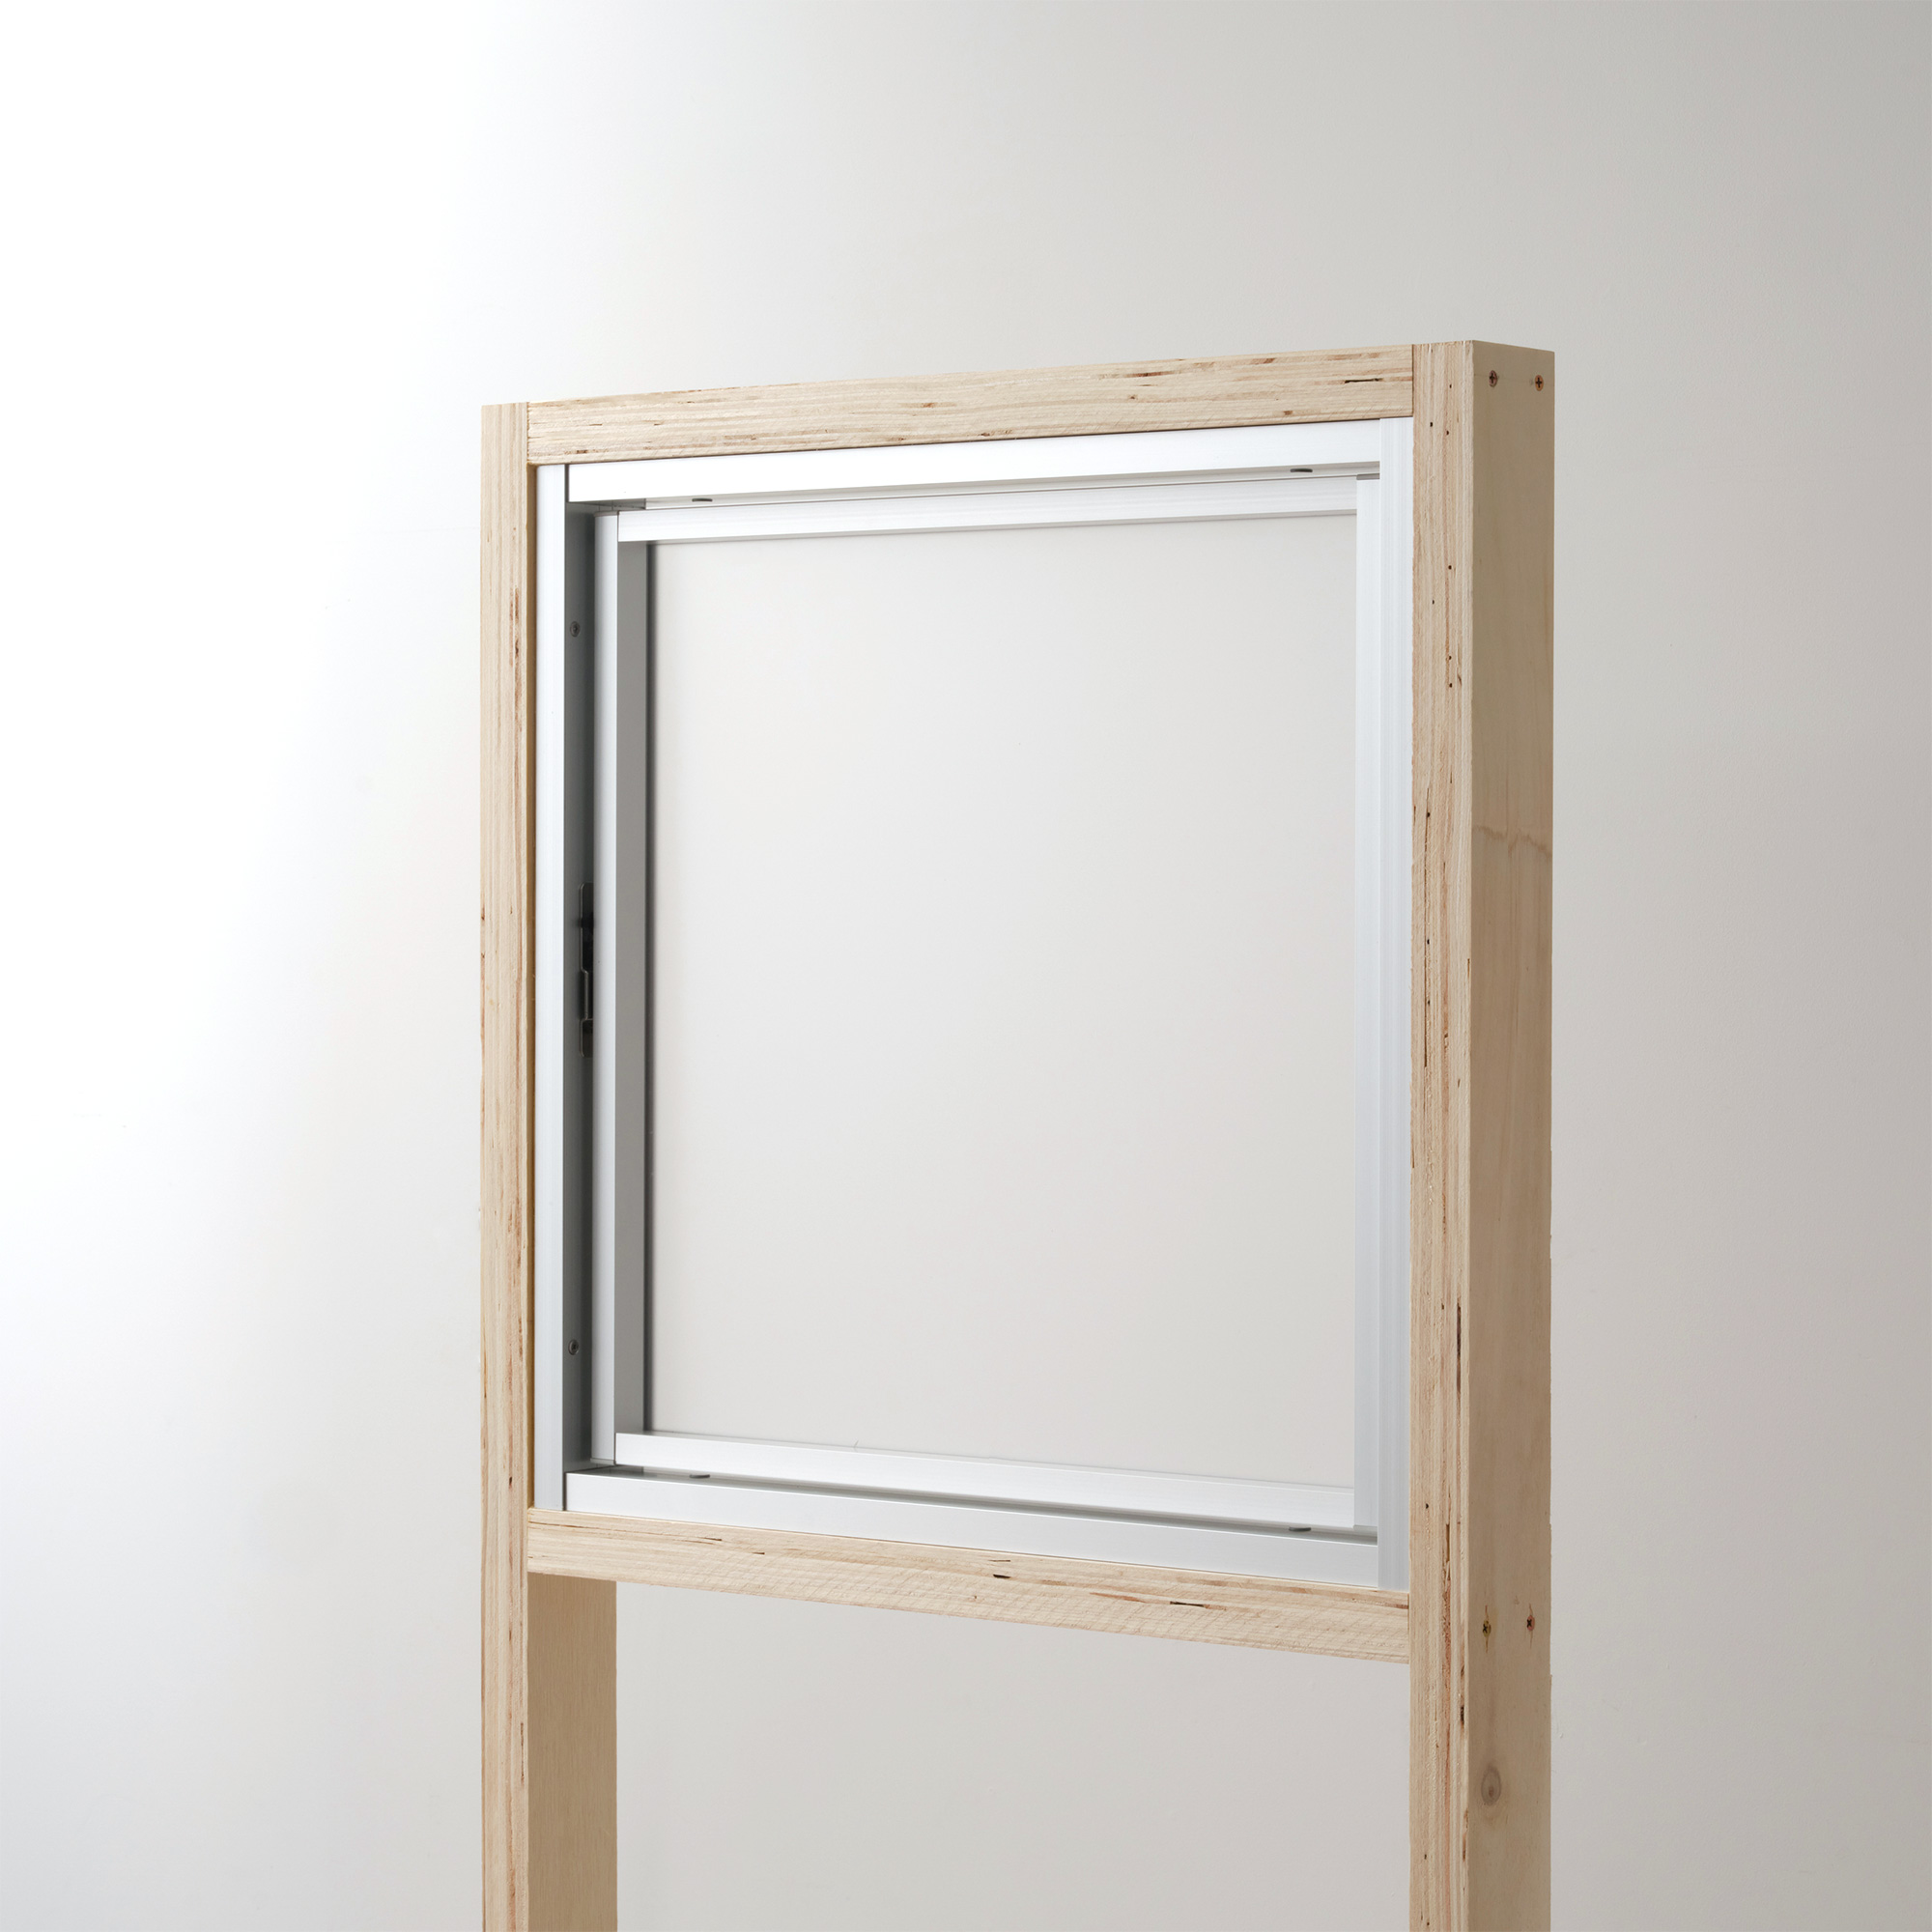 室内アルミサッシ 回転窓＋回転窓 シルバー 樹脂パネル DW-DR013-24-G201 回転窓 W500 H500 マット樹脂パネル